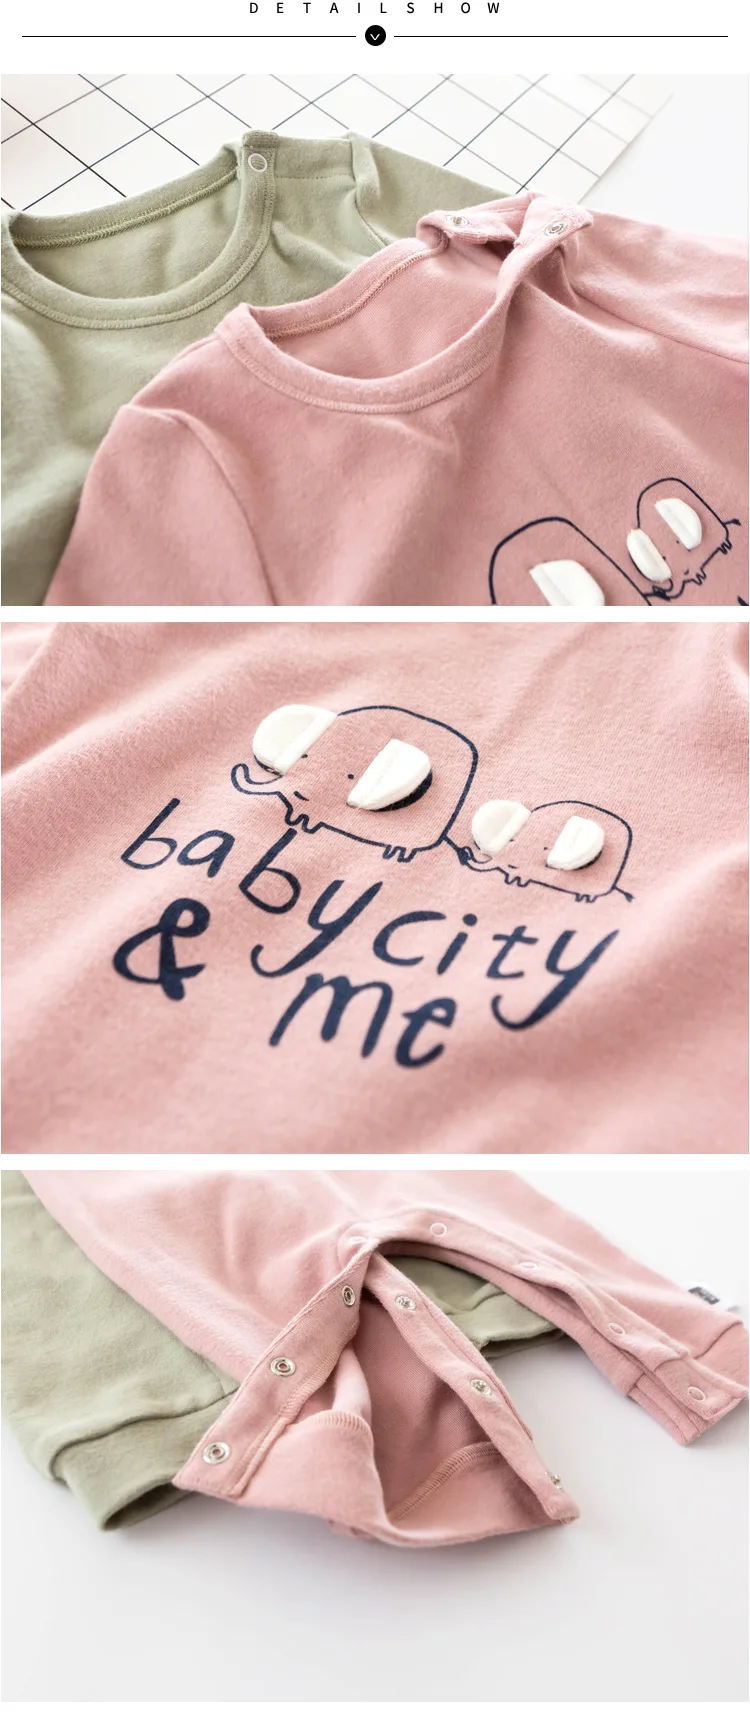 Lemonmiyu/хлопковые пижамы для малышей; детские комбинезоны со слоном; одежда с длинными рукавами для новорожденных; одежда с пуговицами для младенцев; цельнокроеная одежда для сна